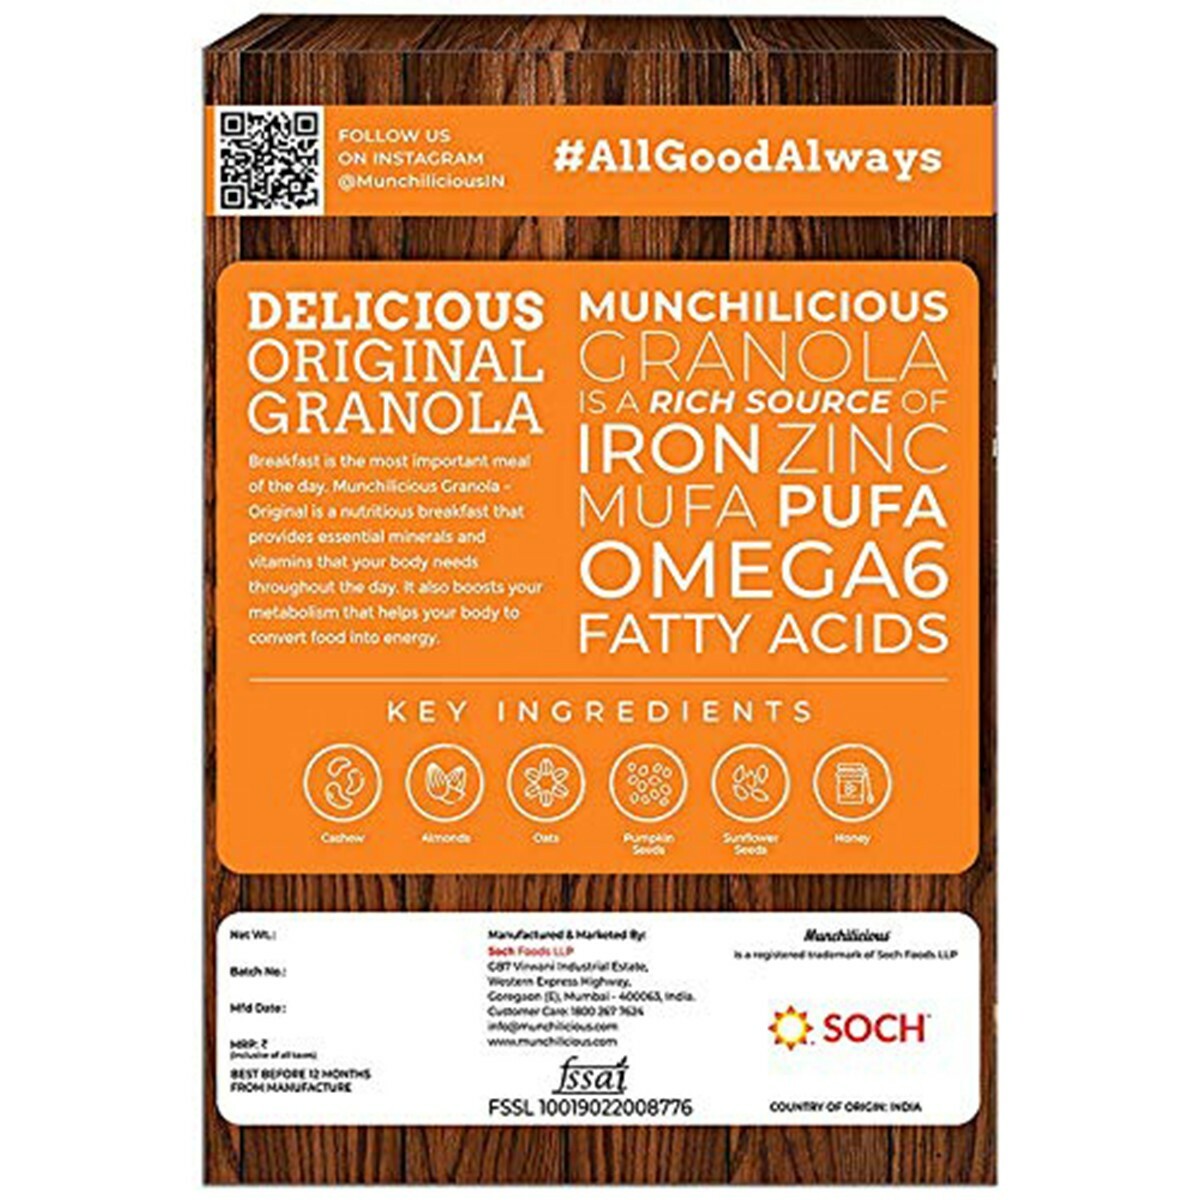 Munchilicious Original Granola Cereal 500g